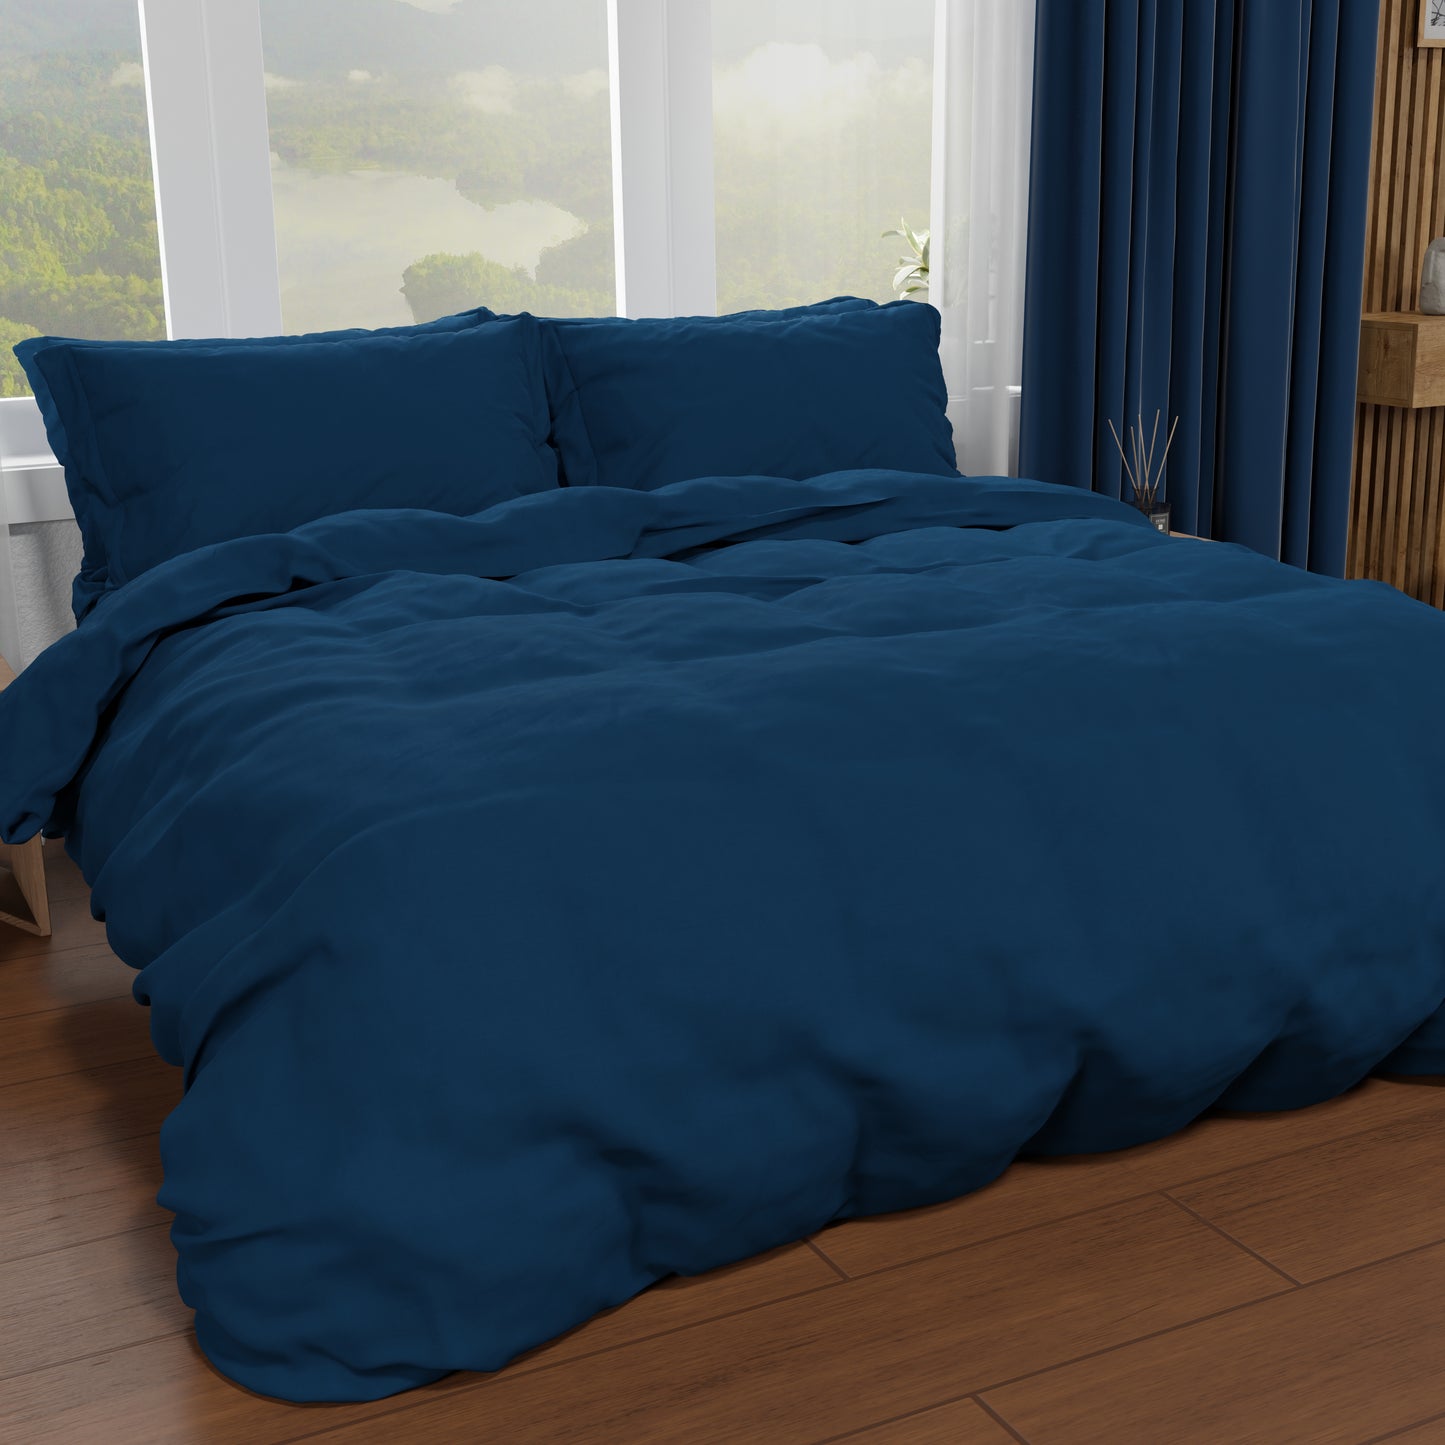 Double Duvet Cover, Duvet Cover and Pillowcases, Plain Night Blue